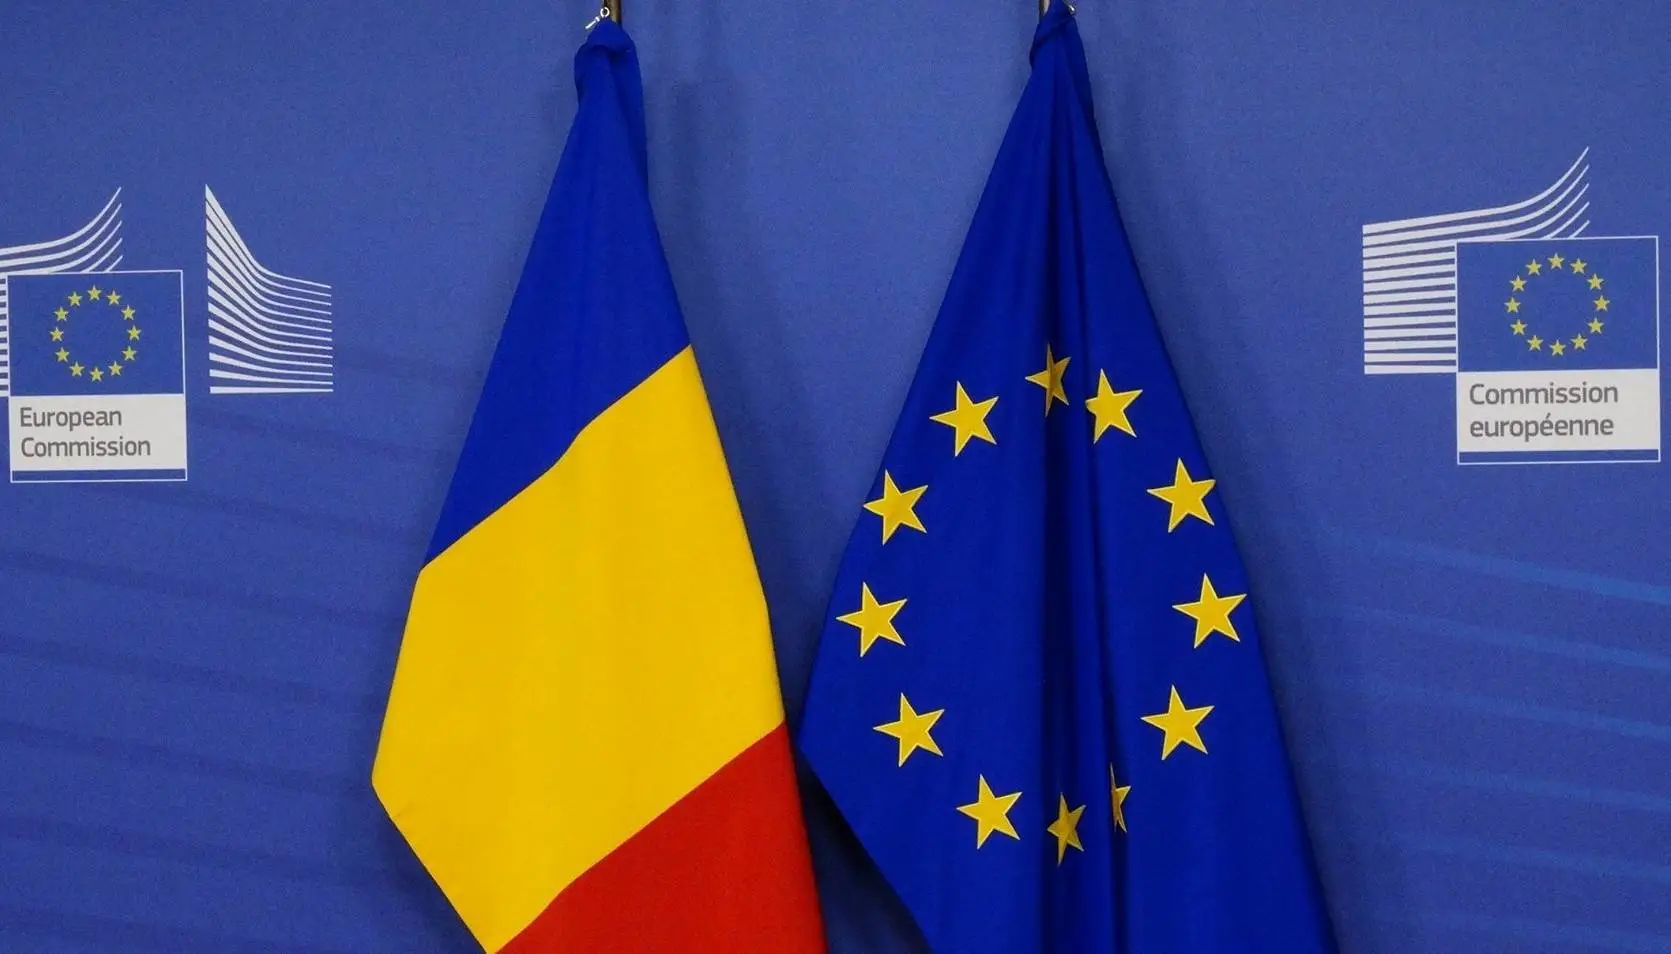 Annonce de la Commission européenne, montant d'argent approuvé pour la Roumanie